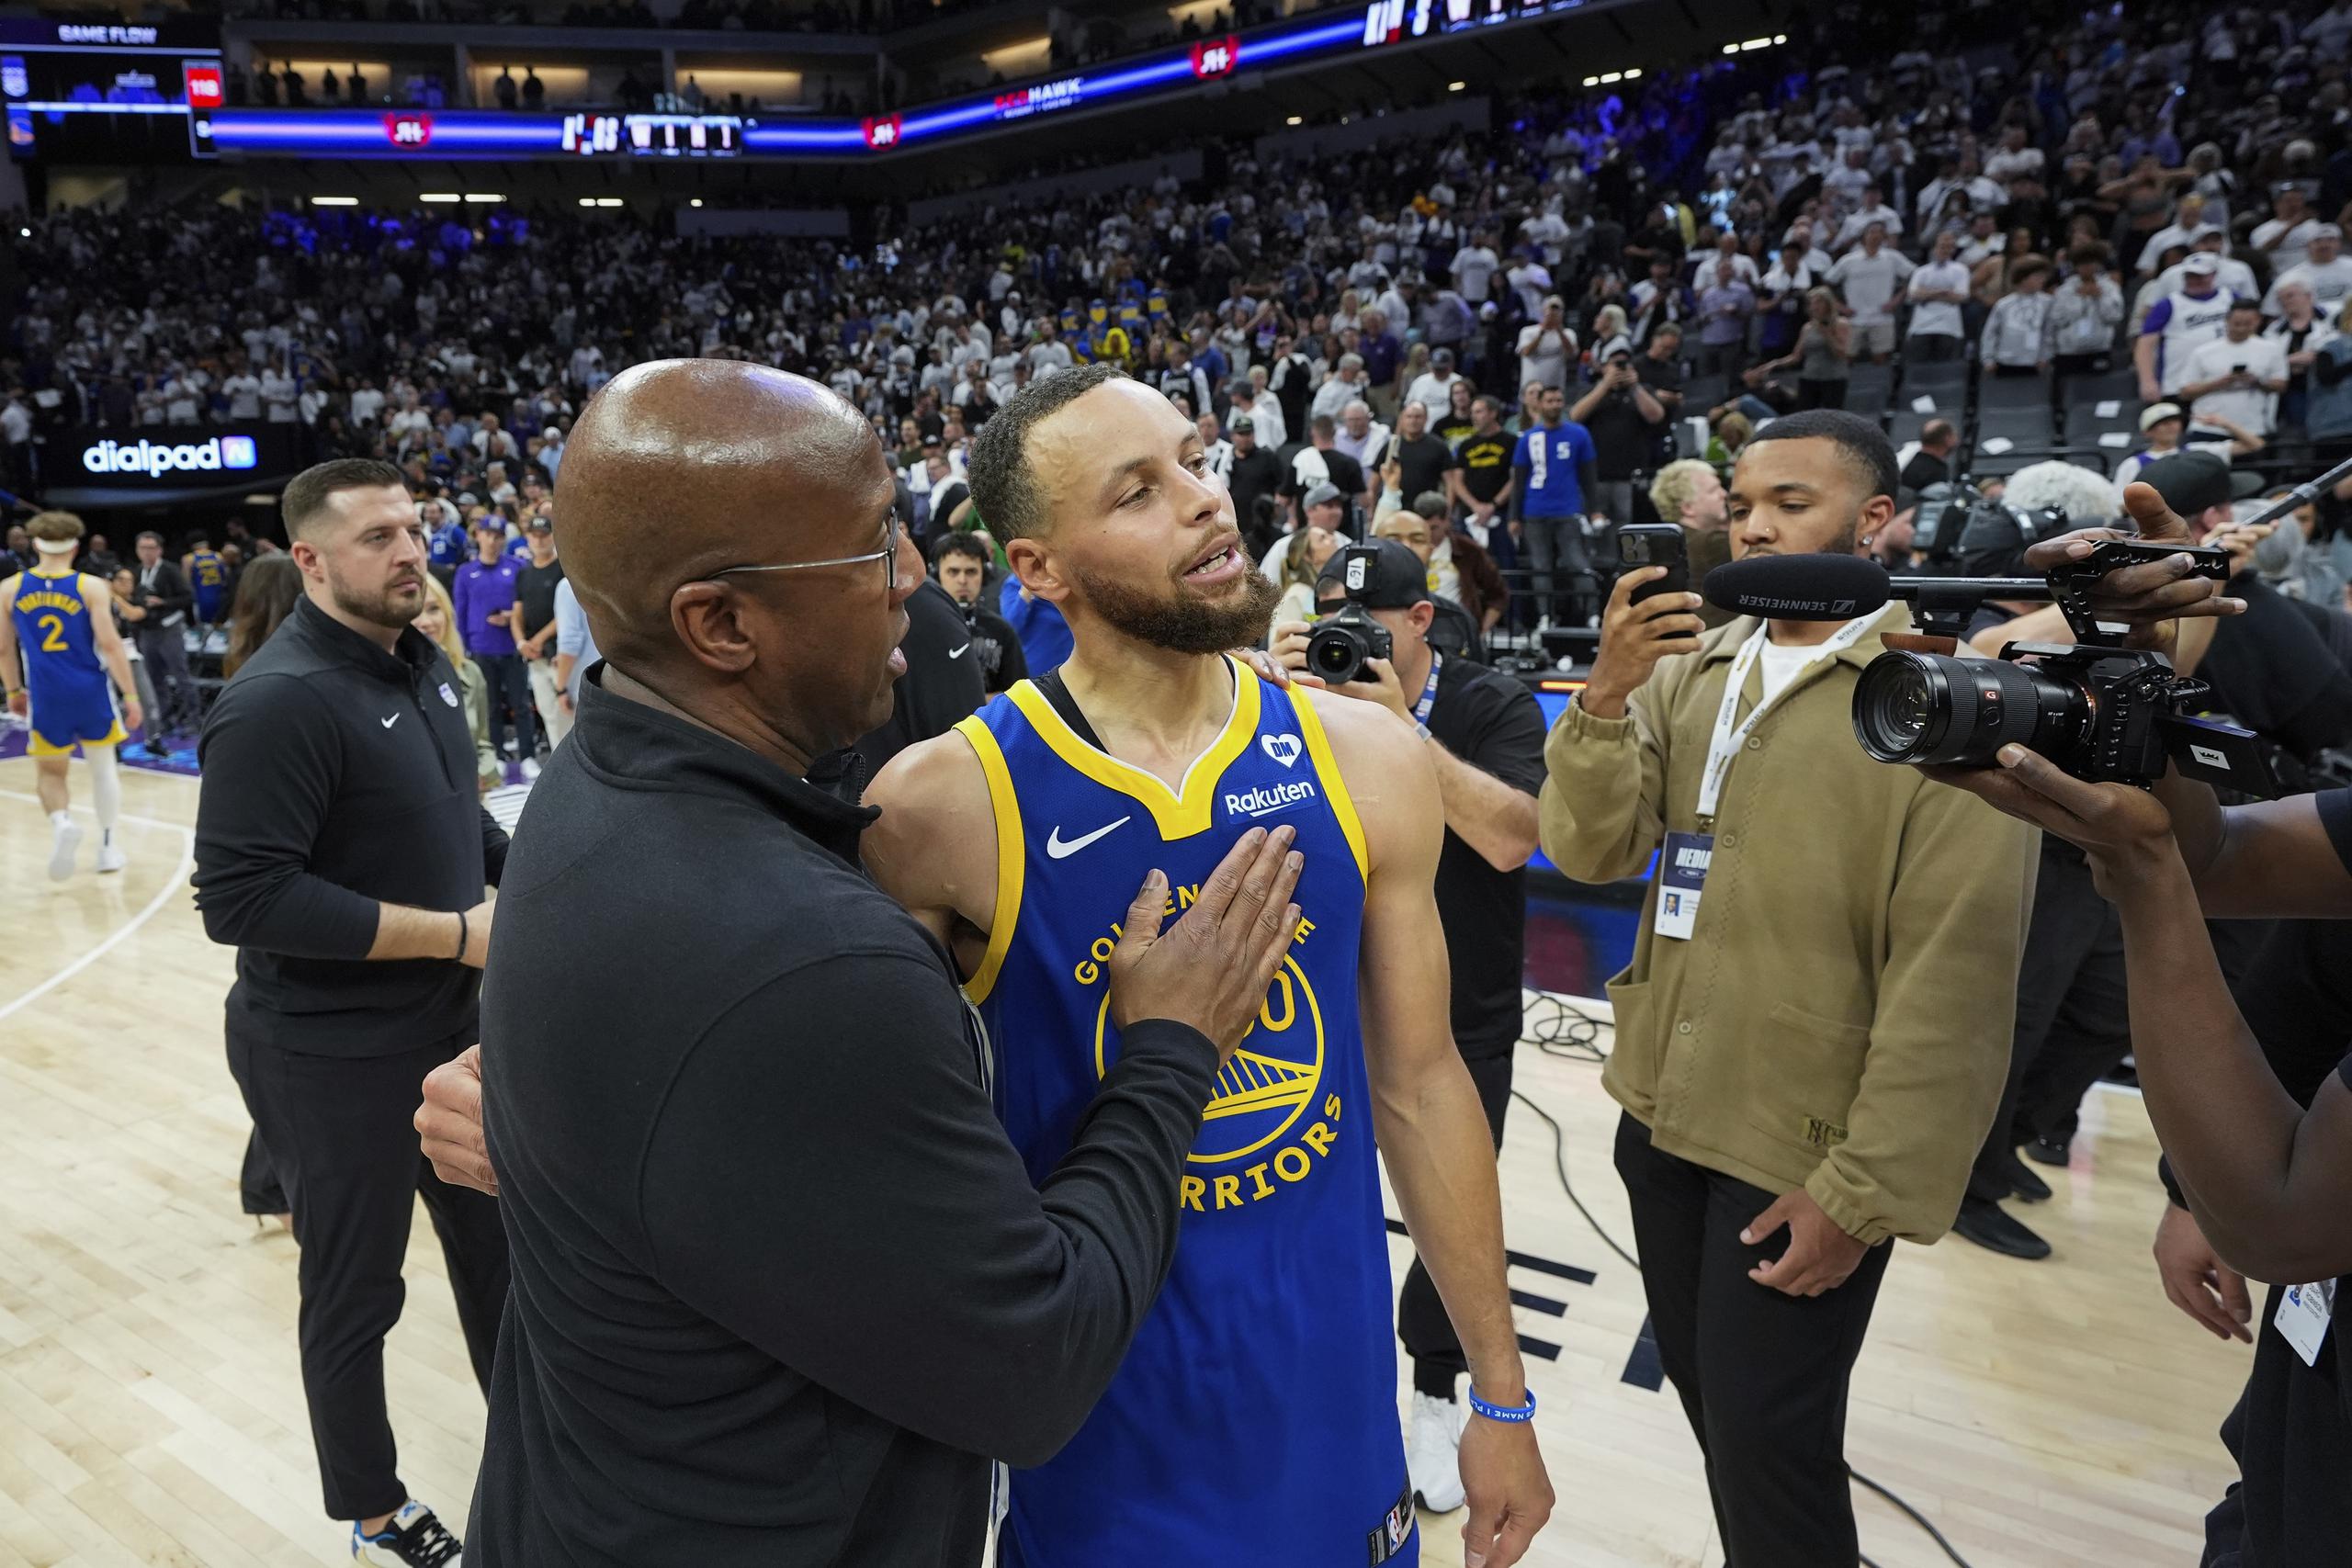 Mike Brown, entrenador de los Kings y exasistente de  los Warriors, consuela a Stephen Curry luego de eliminarlo.